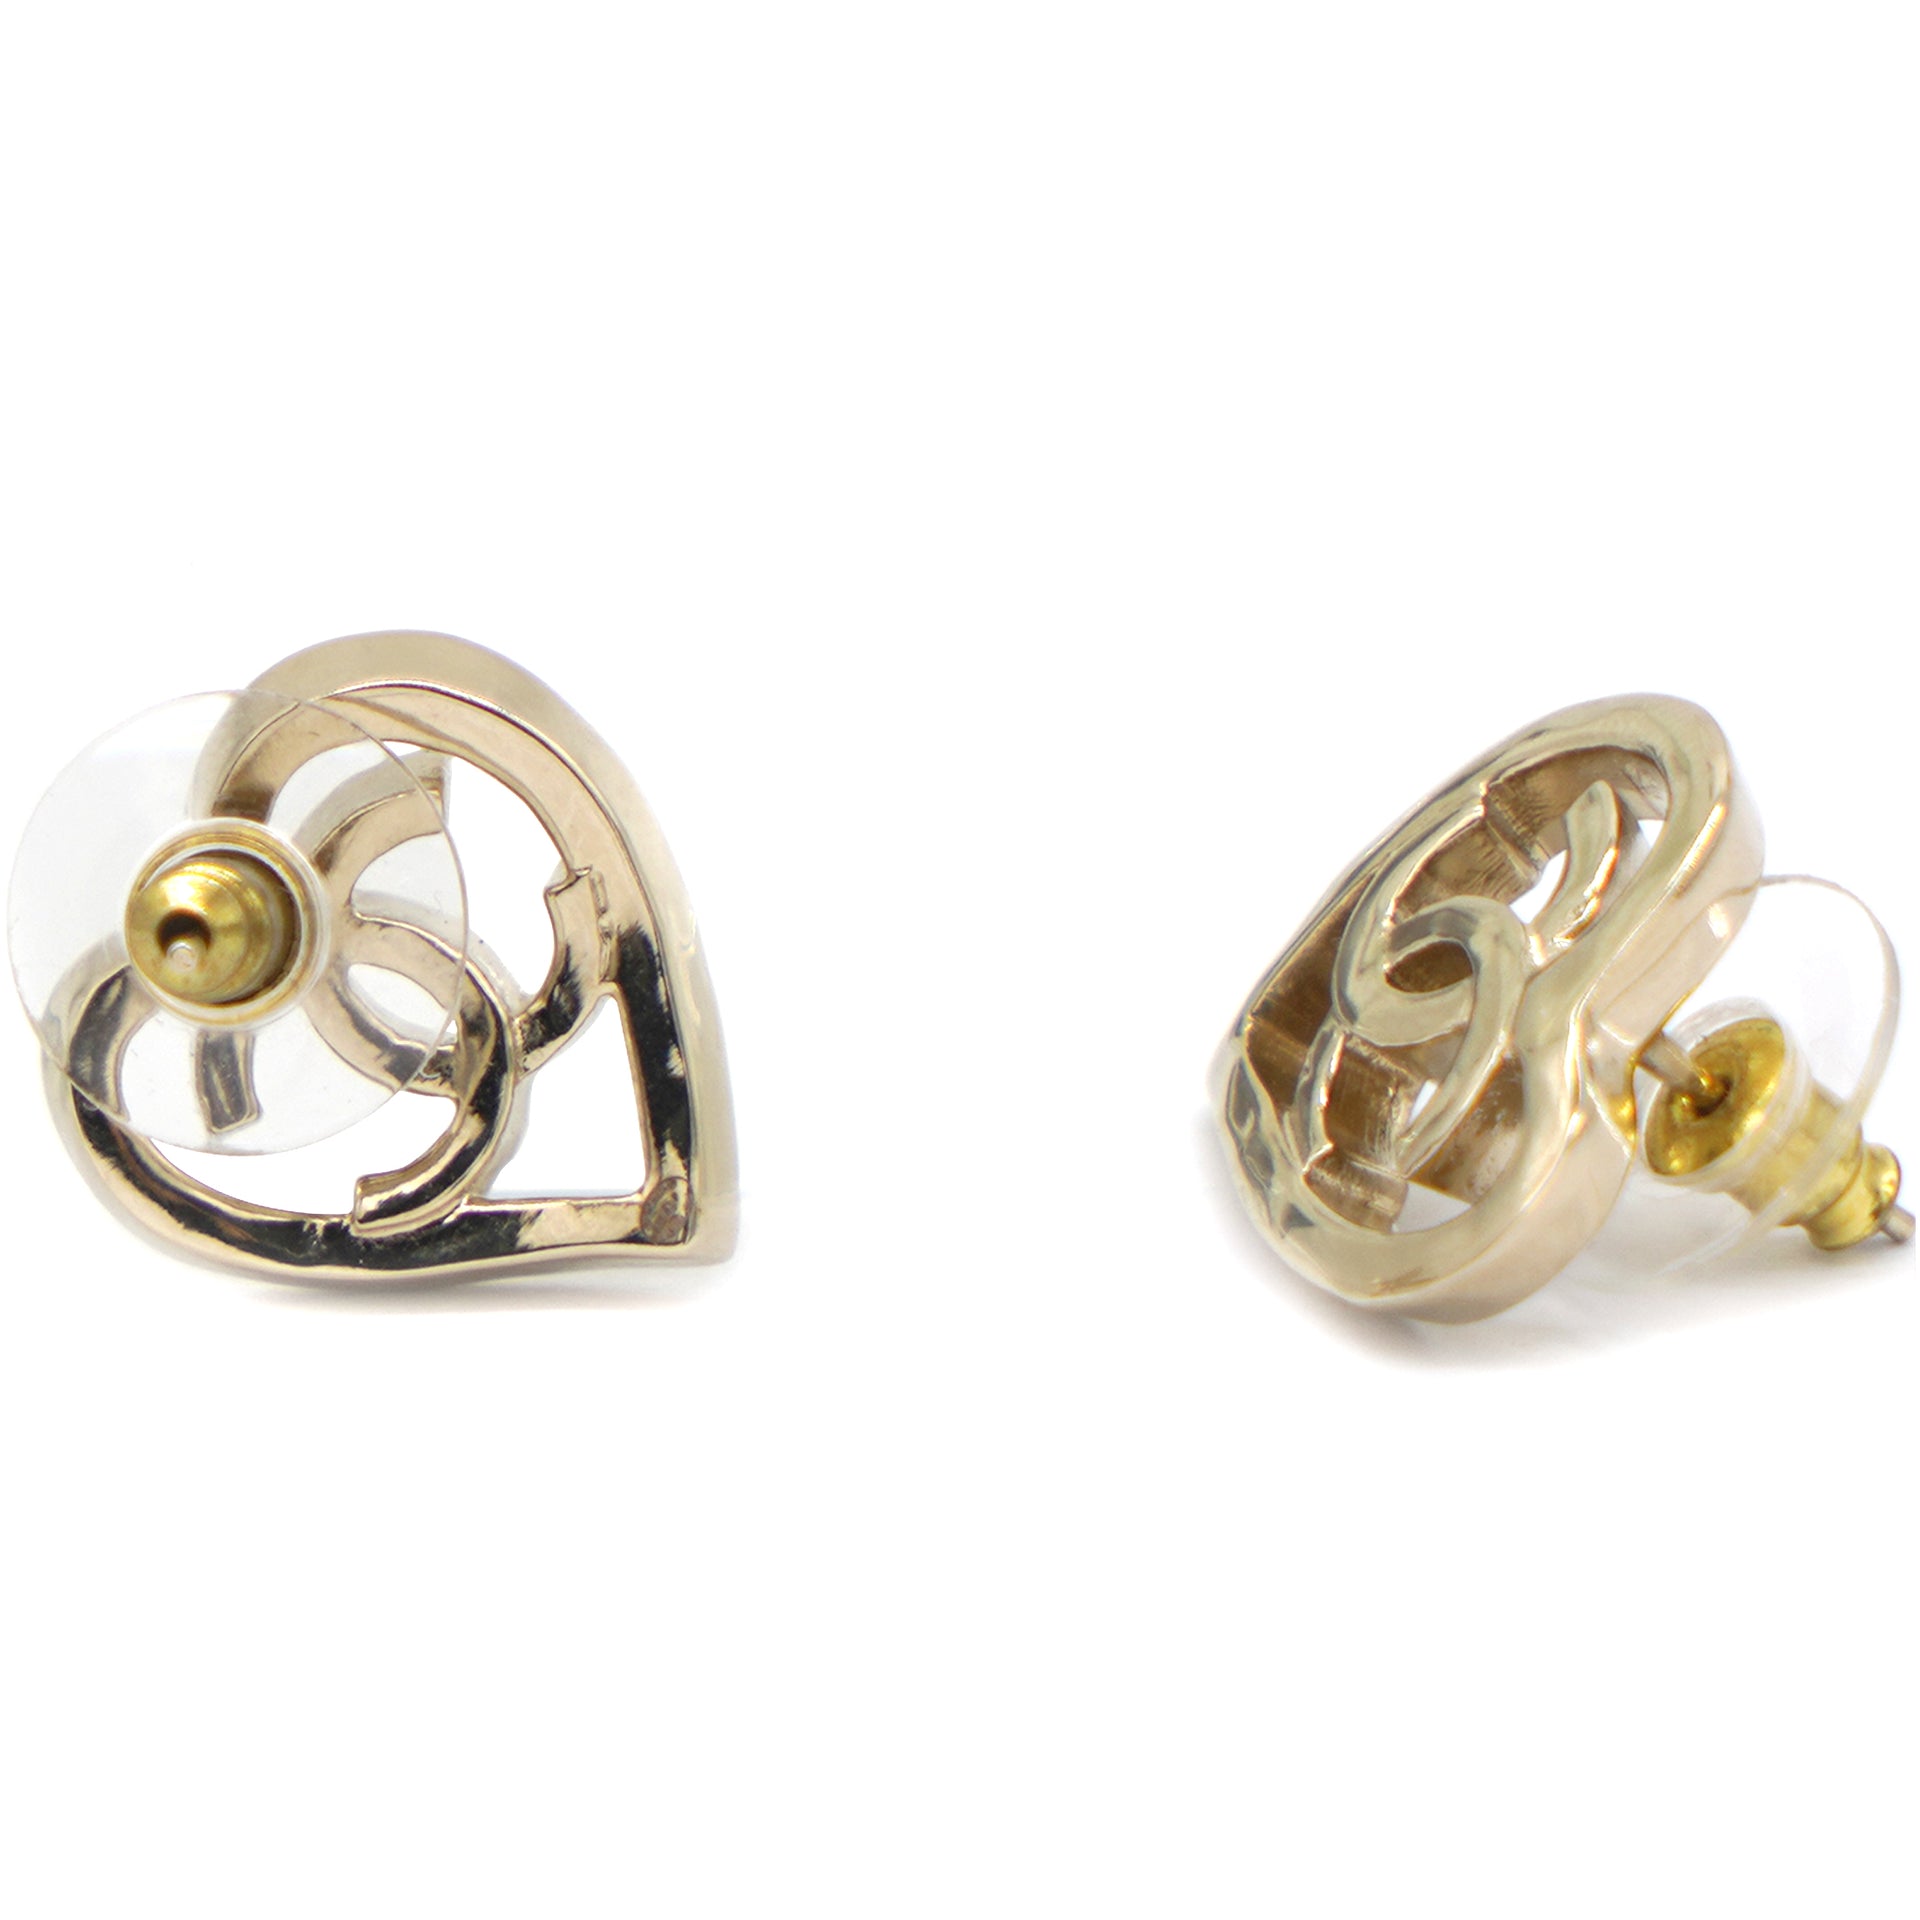 Cc earrings Chanel Gold in Metal - 38611865